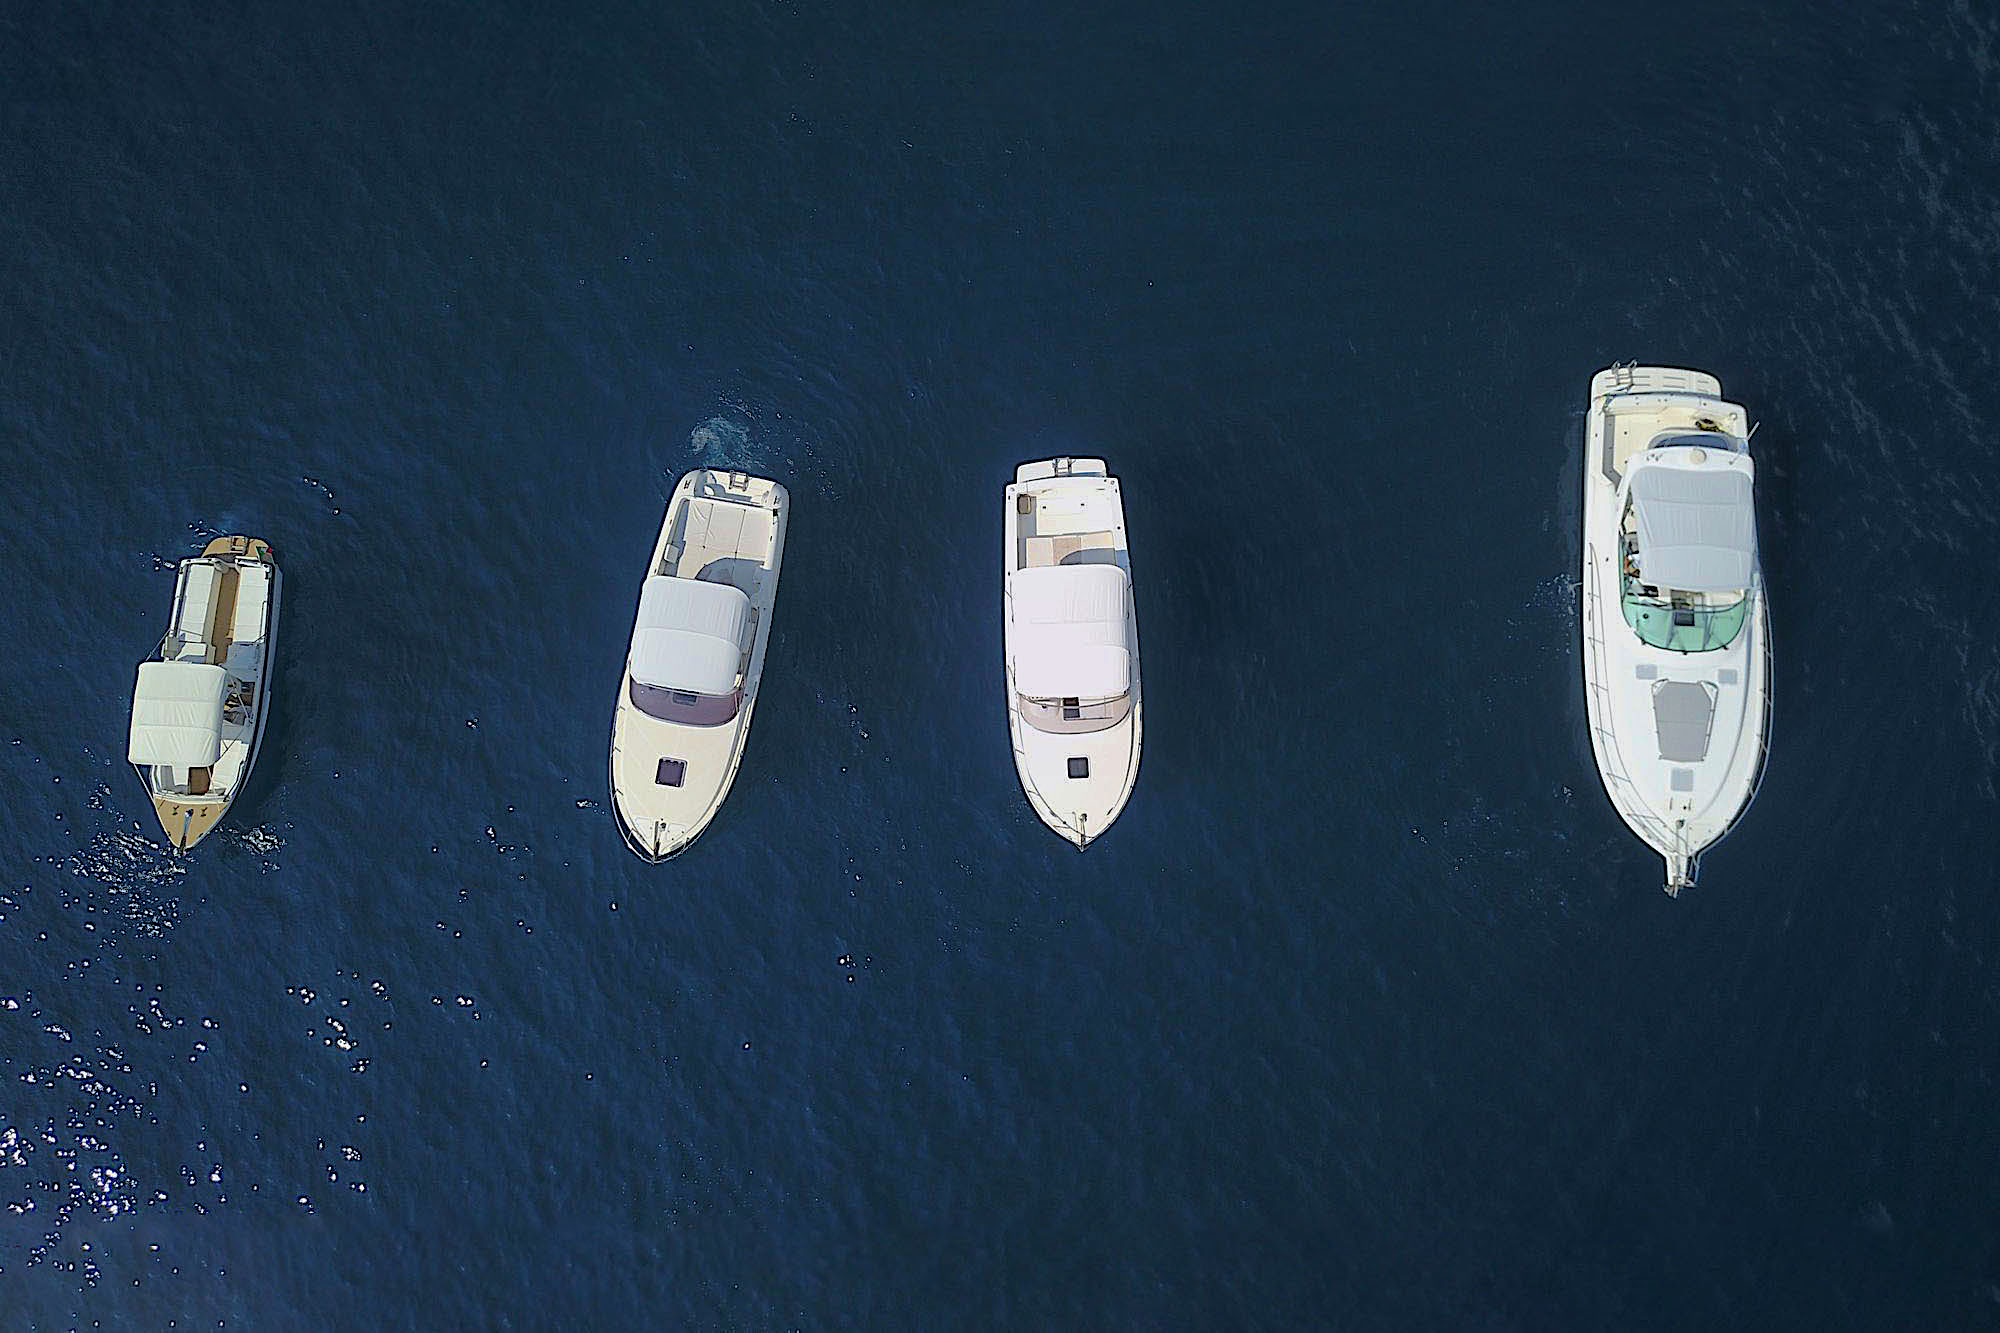 Cesare Charter Portofino - le nostre imbarcazioni